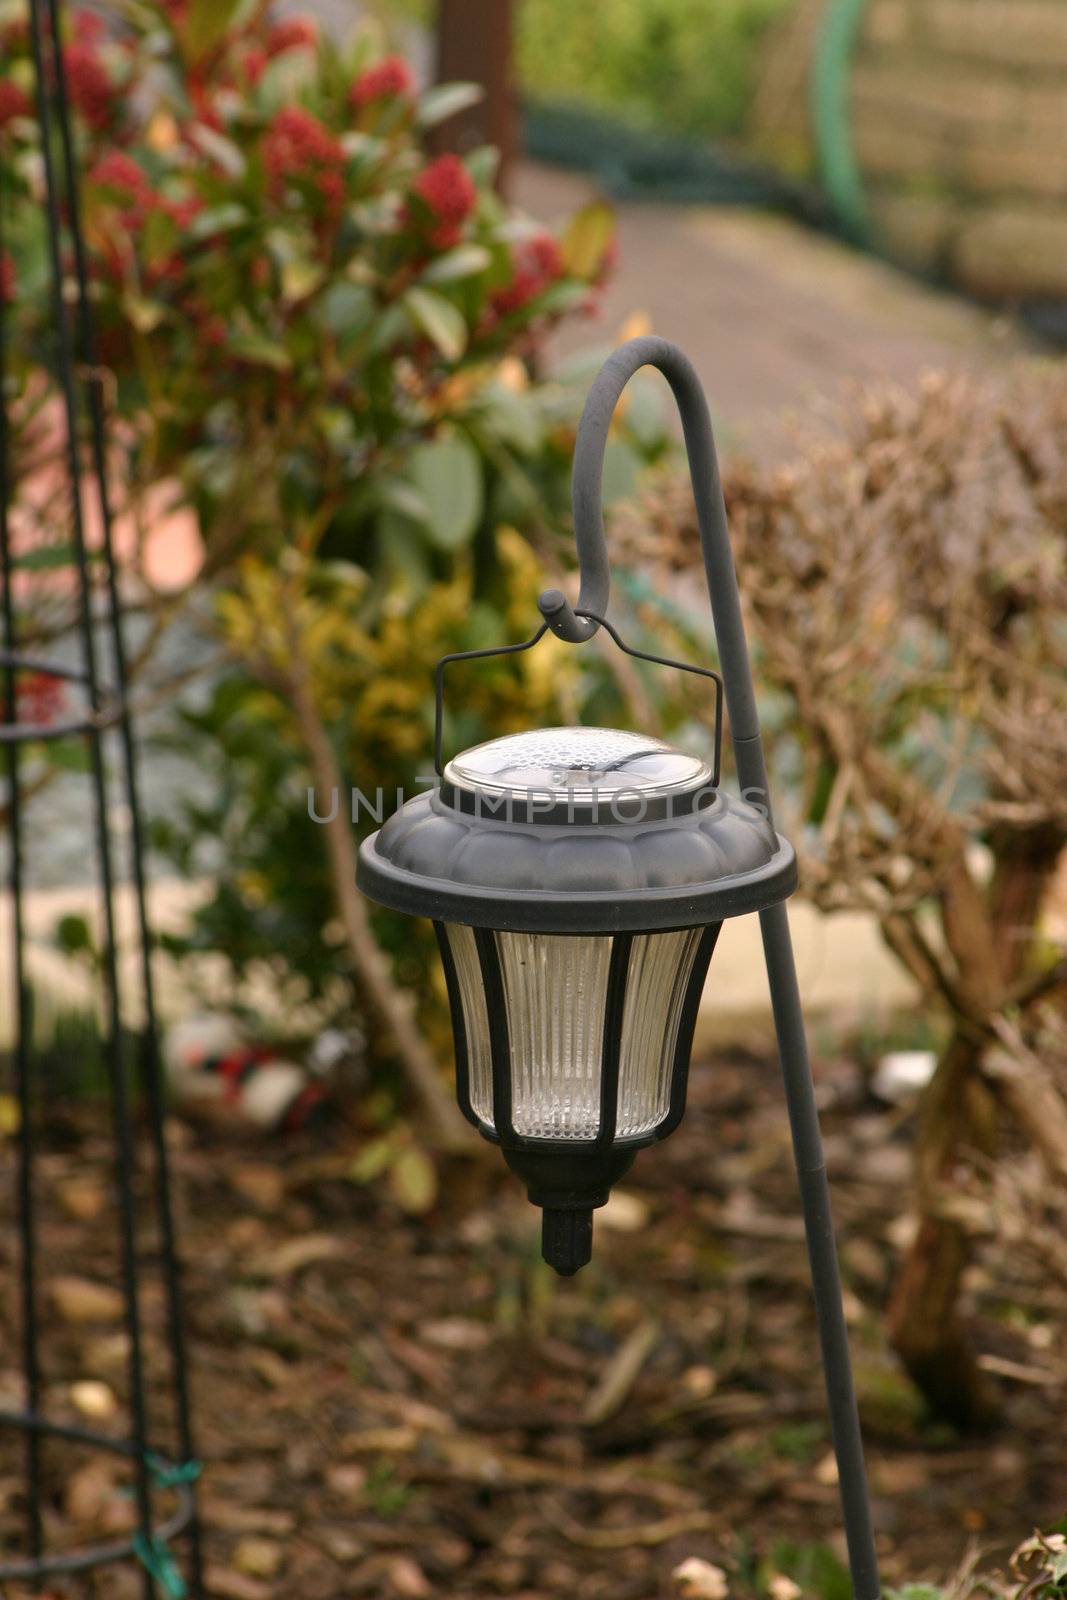 solar powered garden lighting